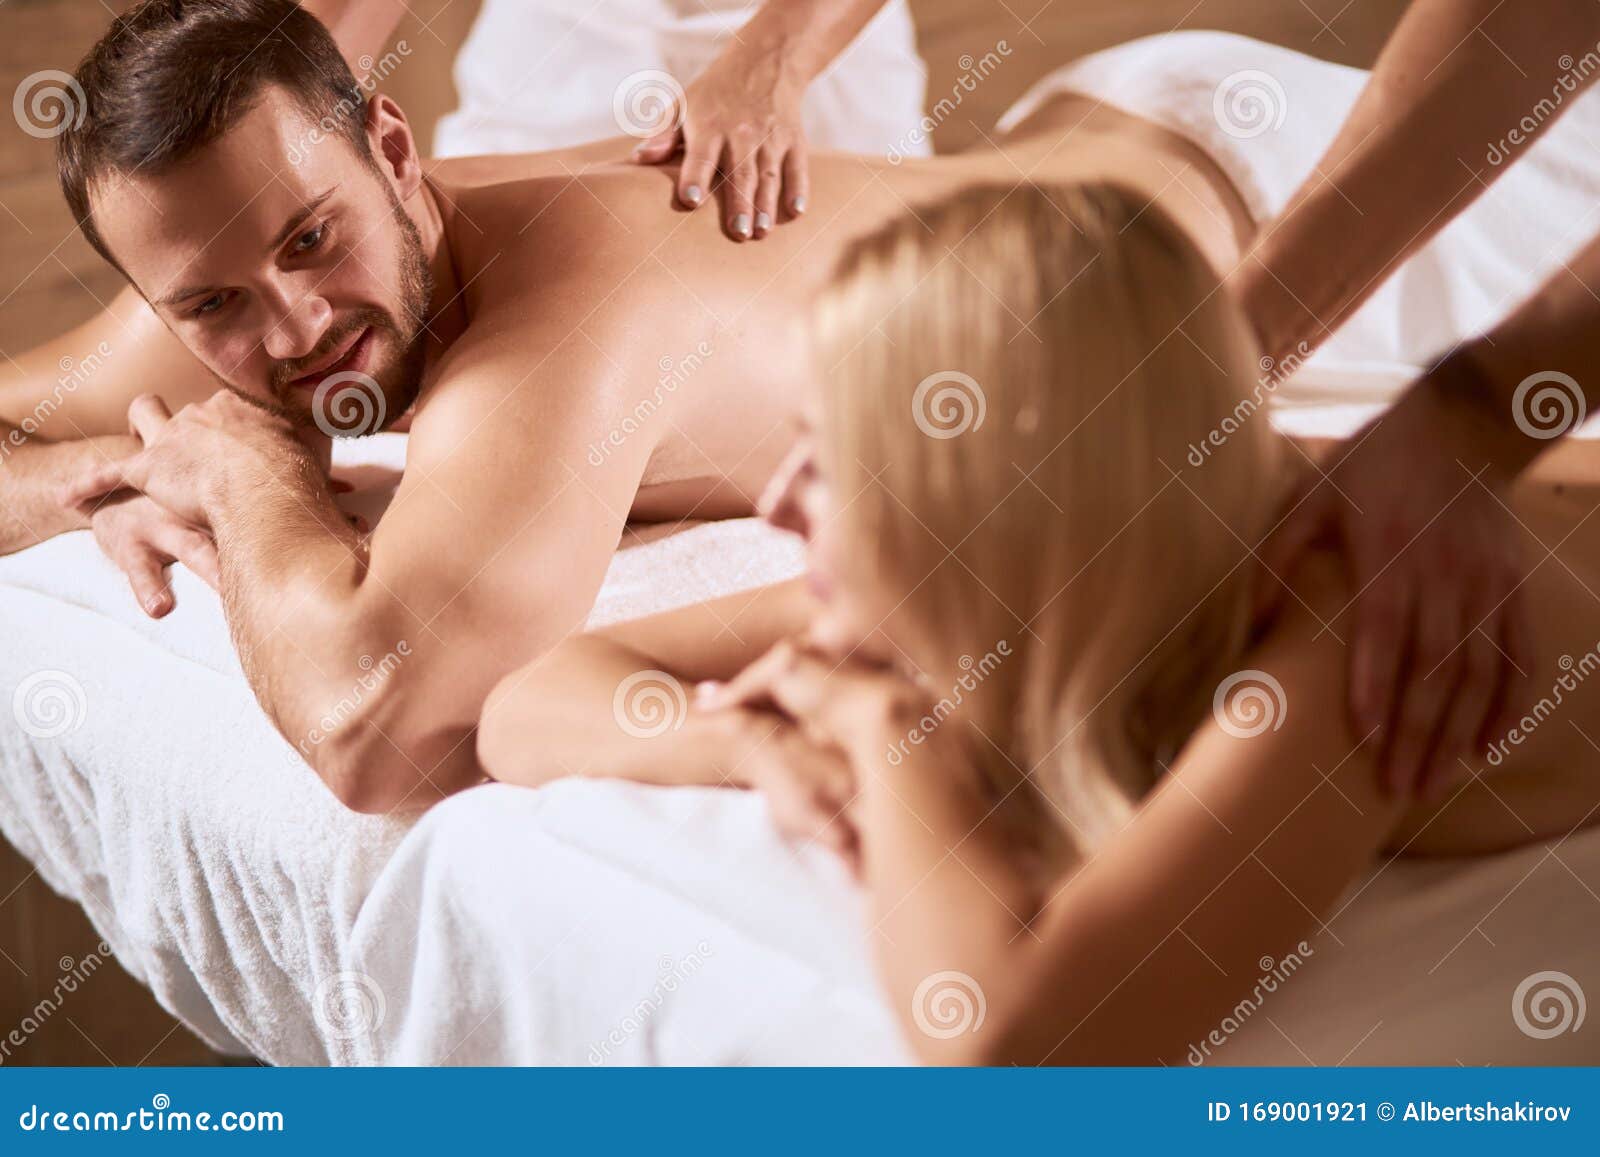 Hand Oil Massage in Spa Salon Stock Image